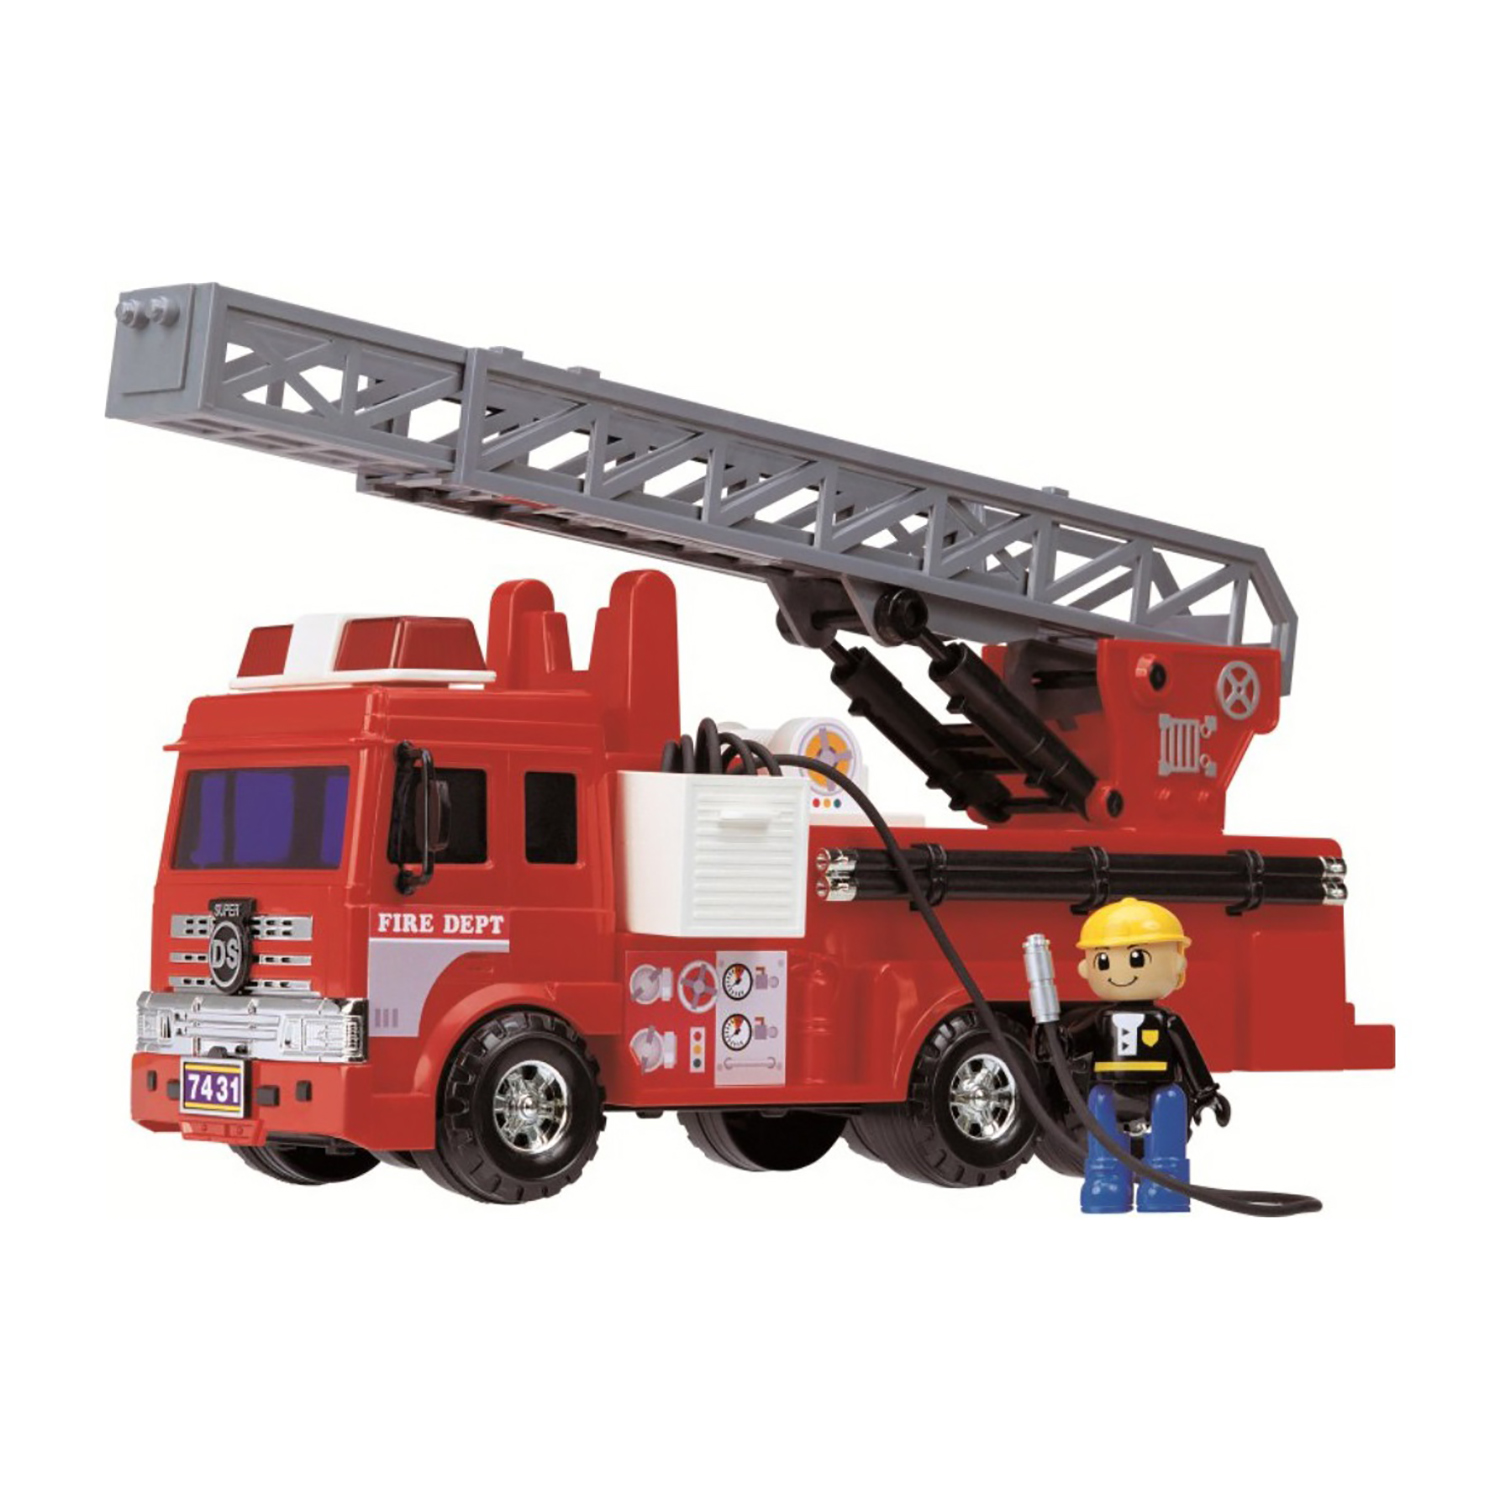 Игровой набор Дасунг Пожарная машина со шлангом и фигуркой, 40377 машина bburago 1 18 ferrari sf21 16 с фигуркой пилота c leclerc 18 16809